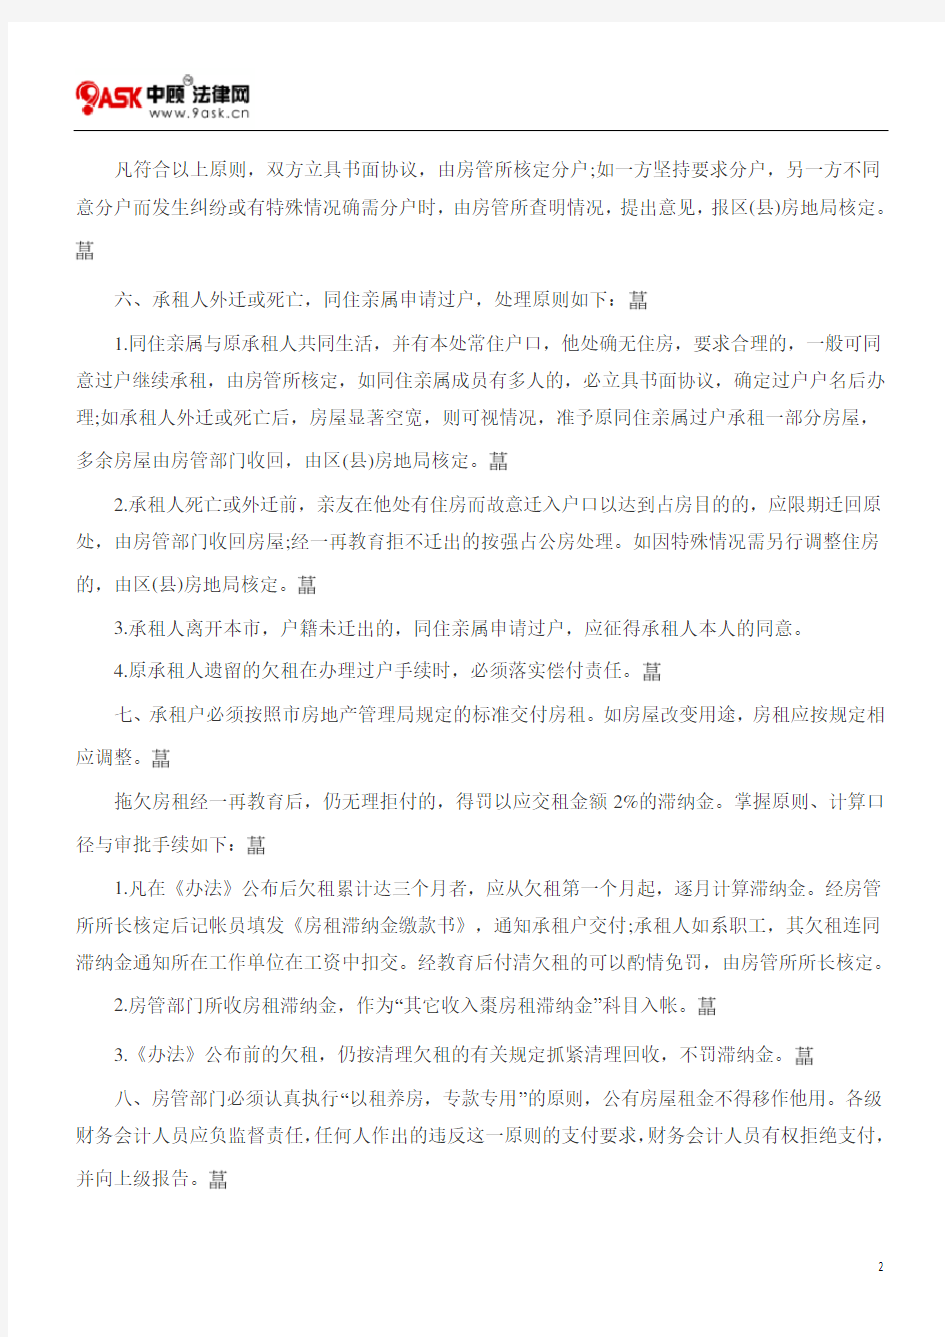 上海市公有房屋租赁管理办法(试行)实施细则